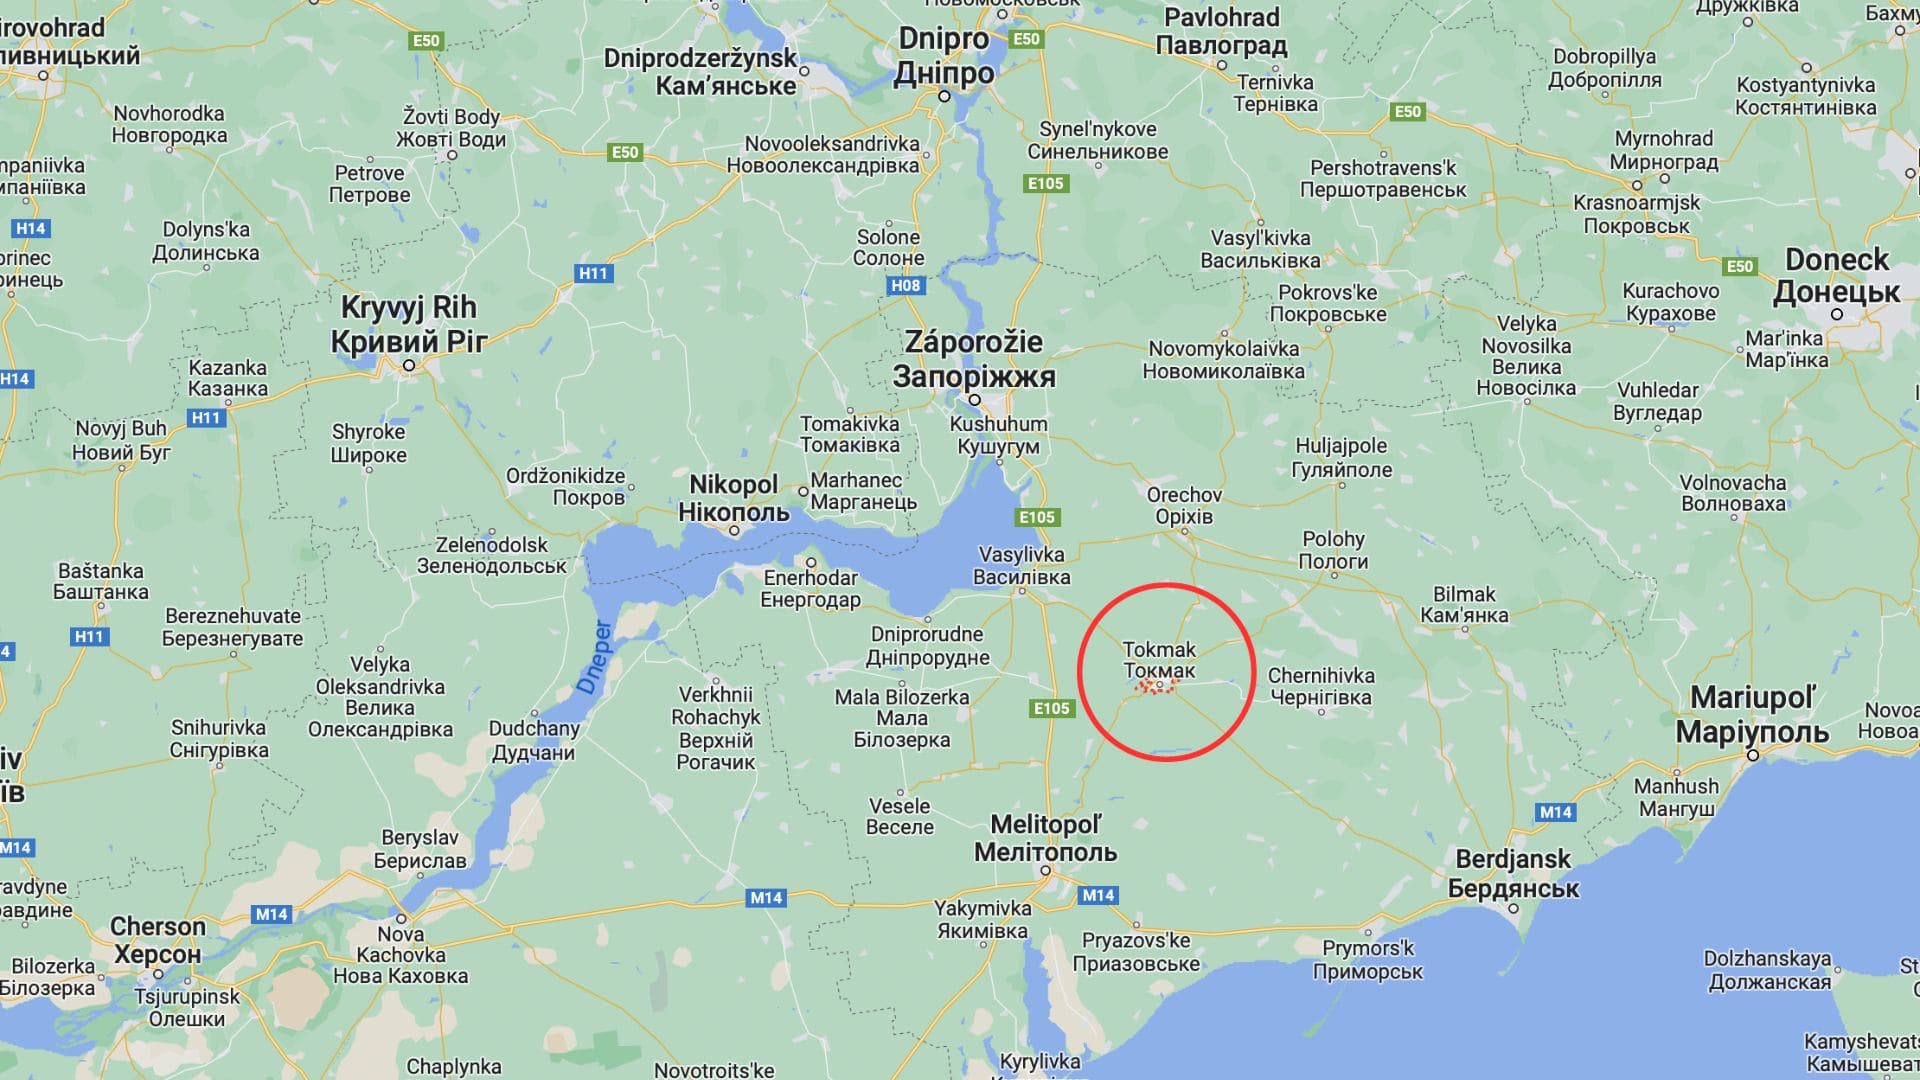 Mapa Ukrajiny, vyznačené mesto Tokmak